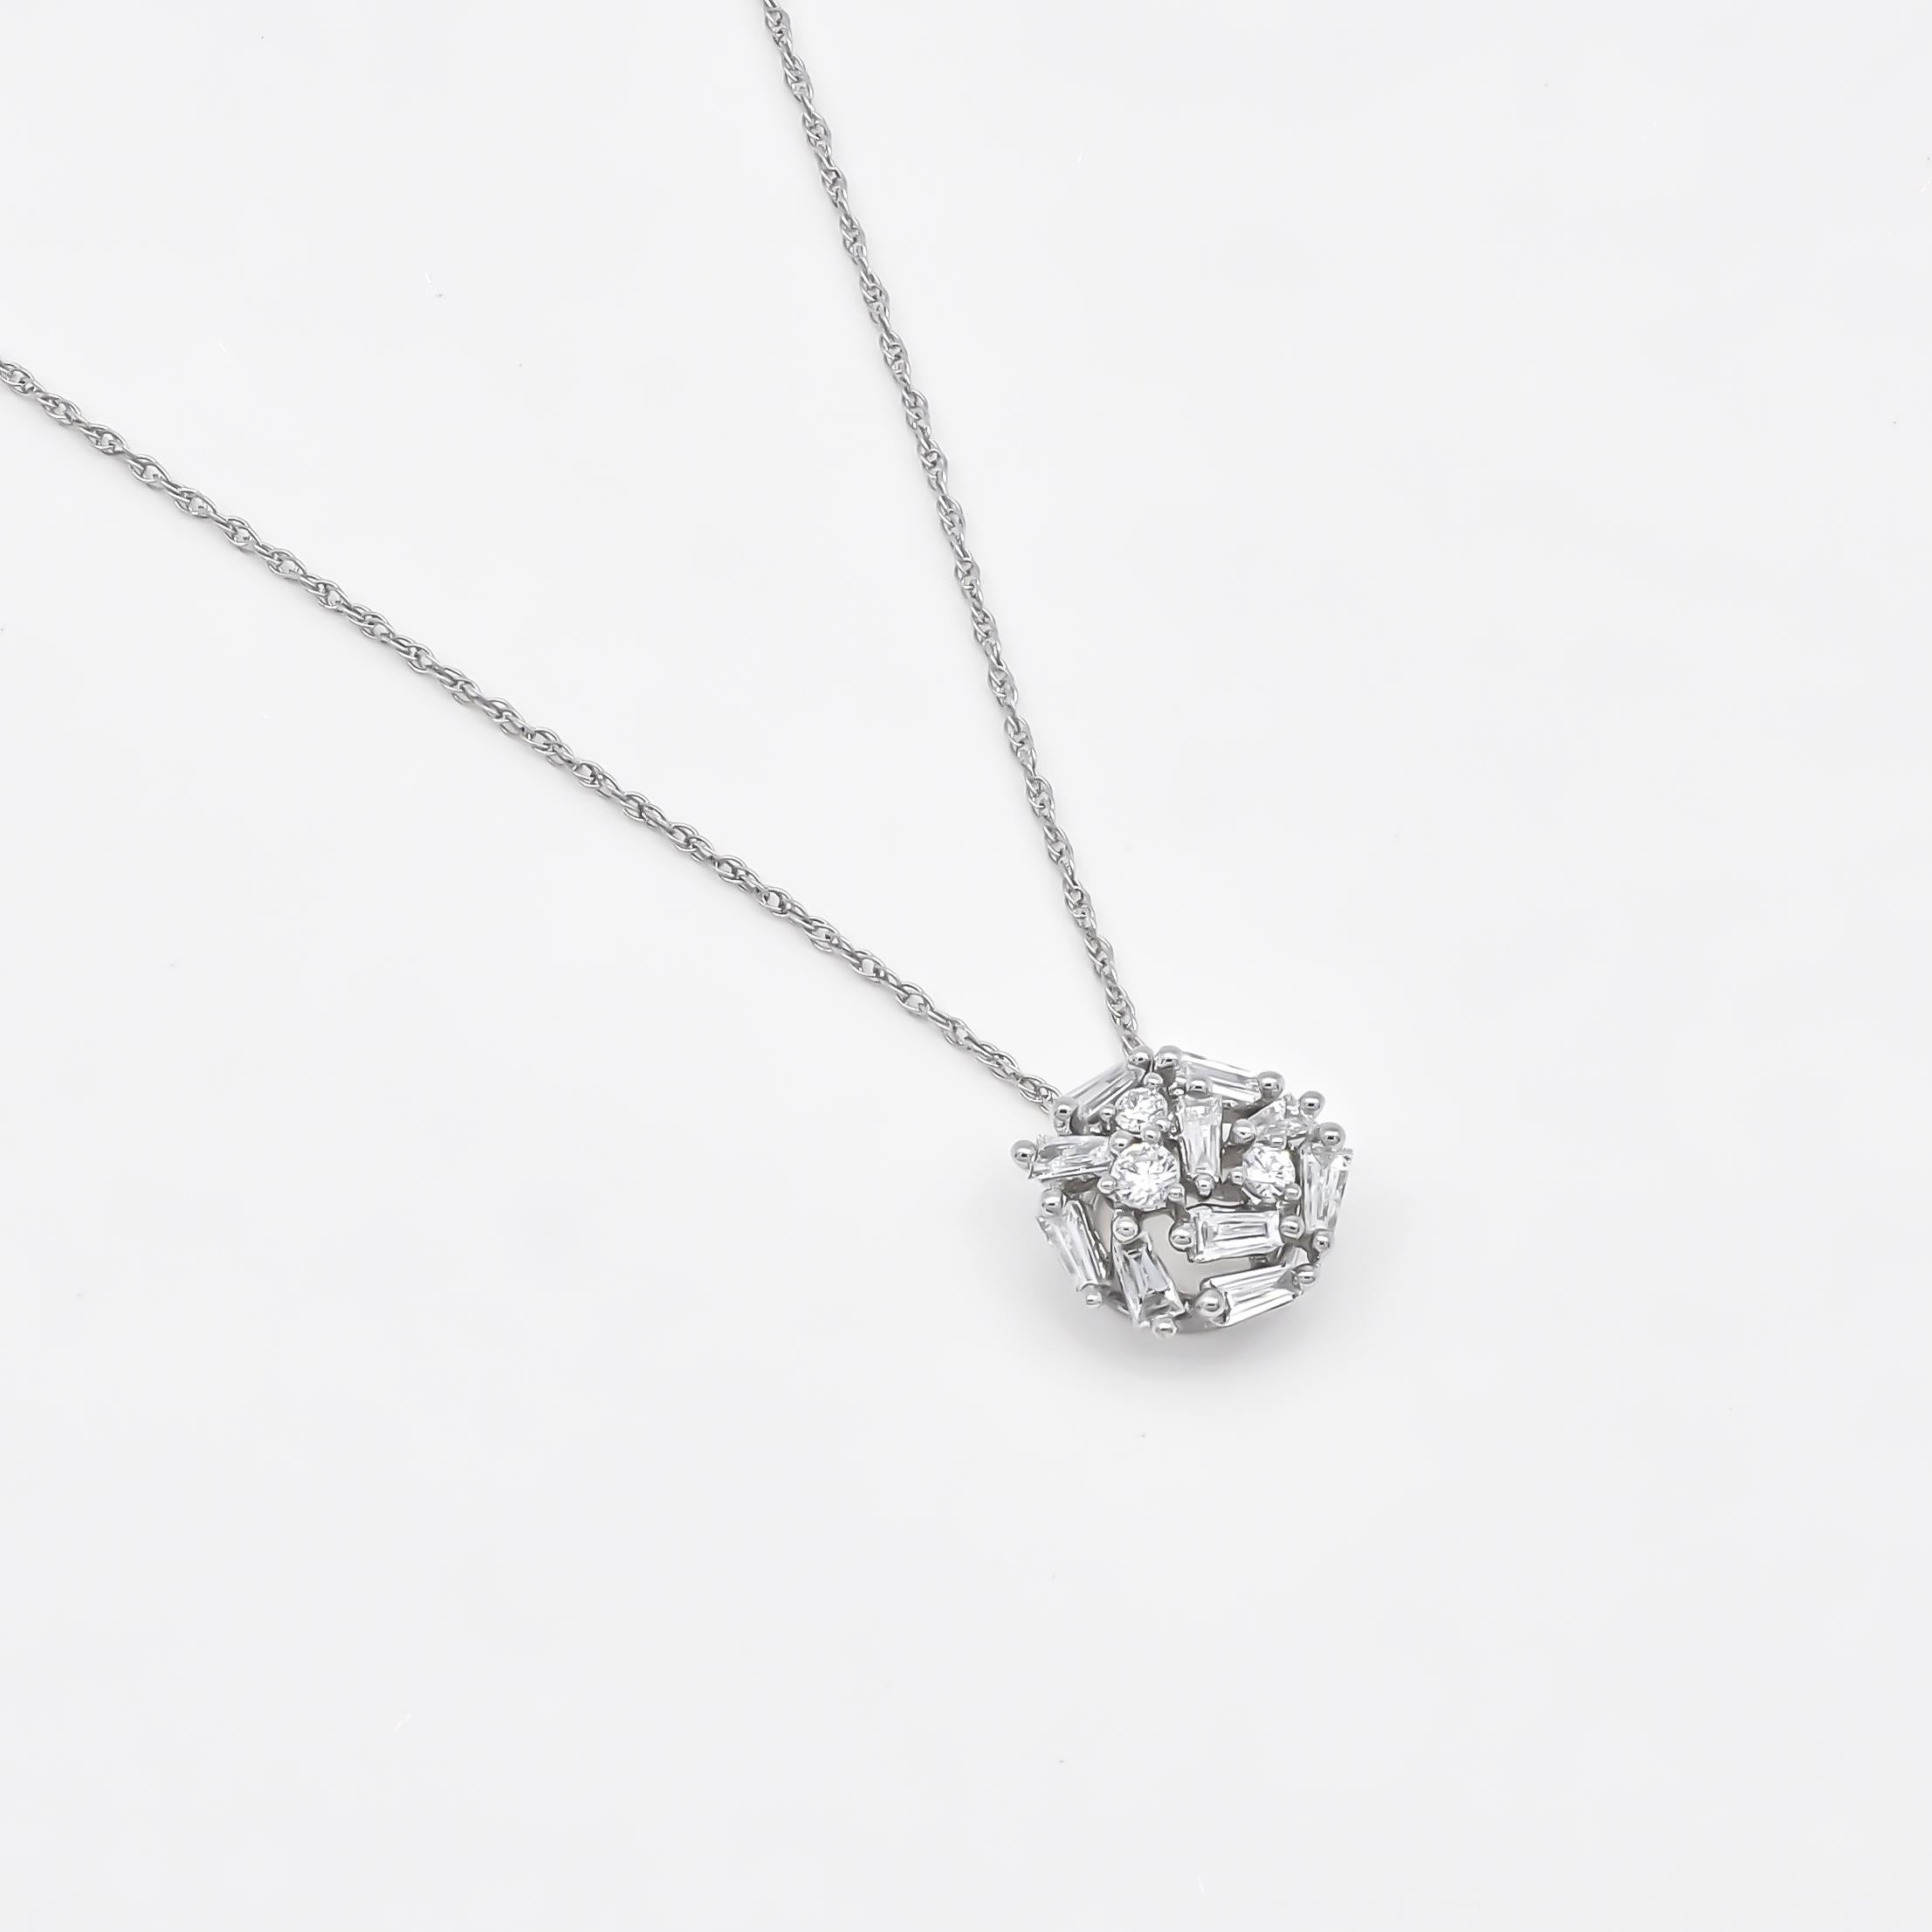 Laissez-vous séduire par la beauté époustouflante de ce collier pendentif, orné d'une grappe éparse de diamants ronds et baguettes sertis dans un luxueux or blanc 18KT. Totalisant 0,44 carat, la disposition des diamants dans ce pendentif crée un